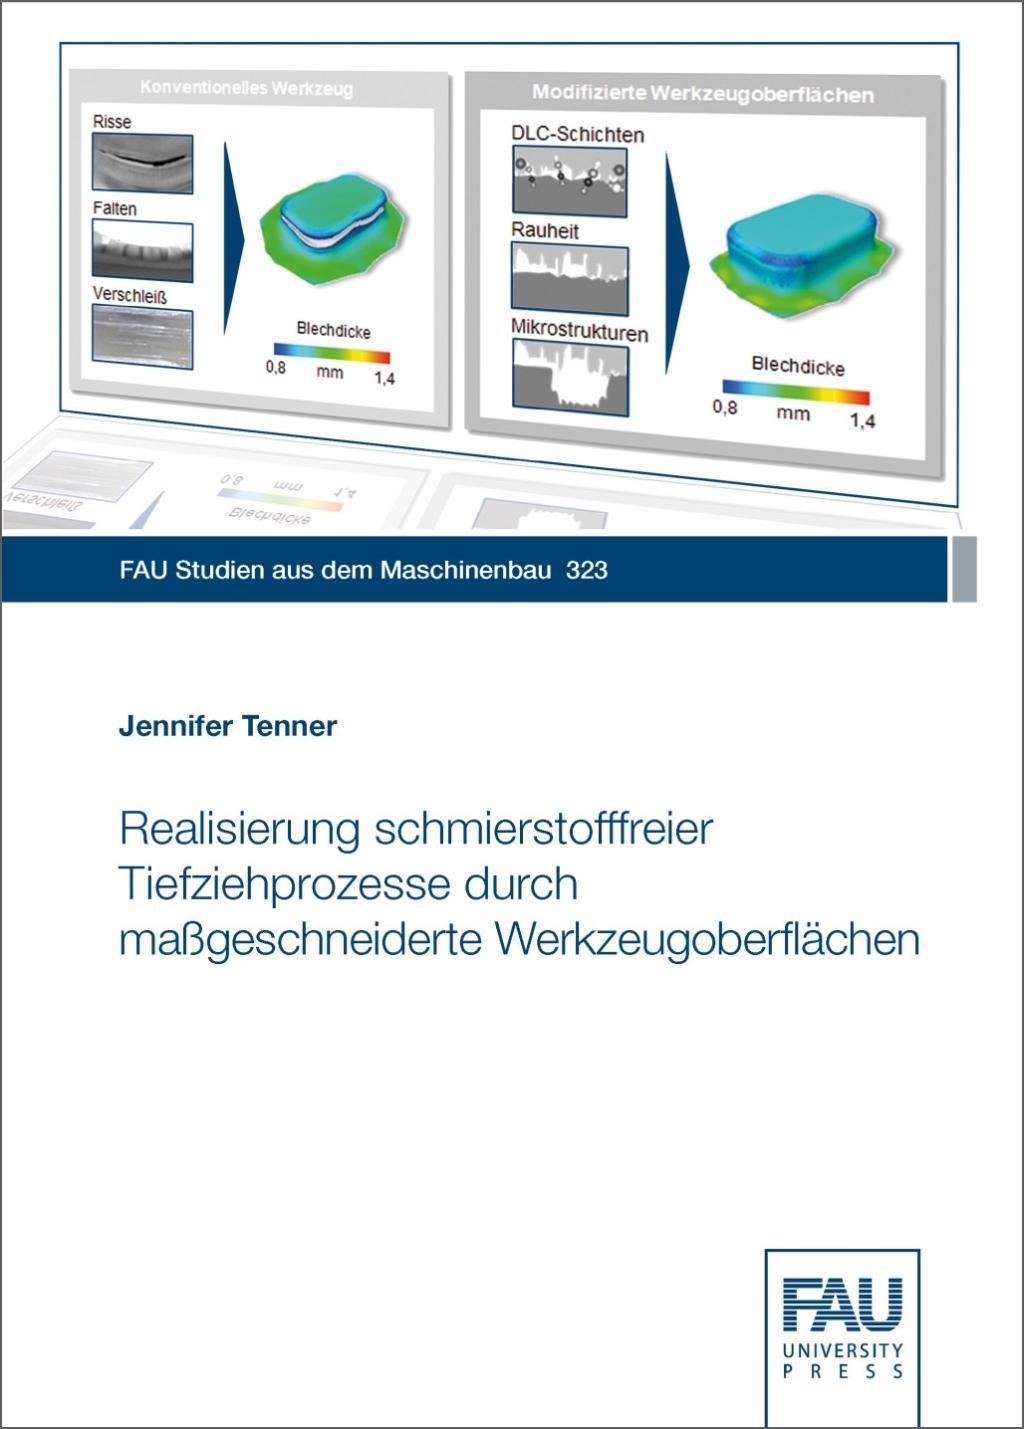 Realisierung Schmierstofffreier Tiefziehprozesse Durch Maßgeschneiderte Werkzeugoberflächen - Jennifer Tenner  Taschenbuch